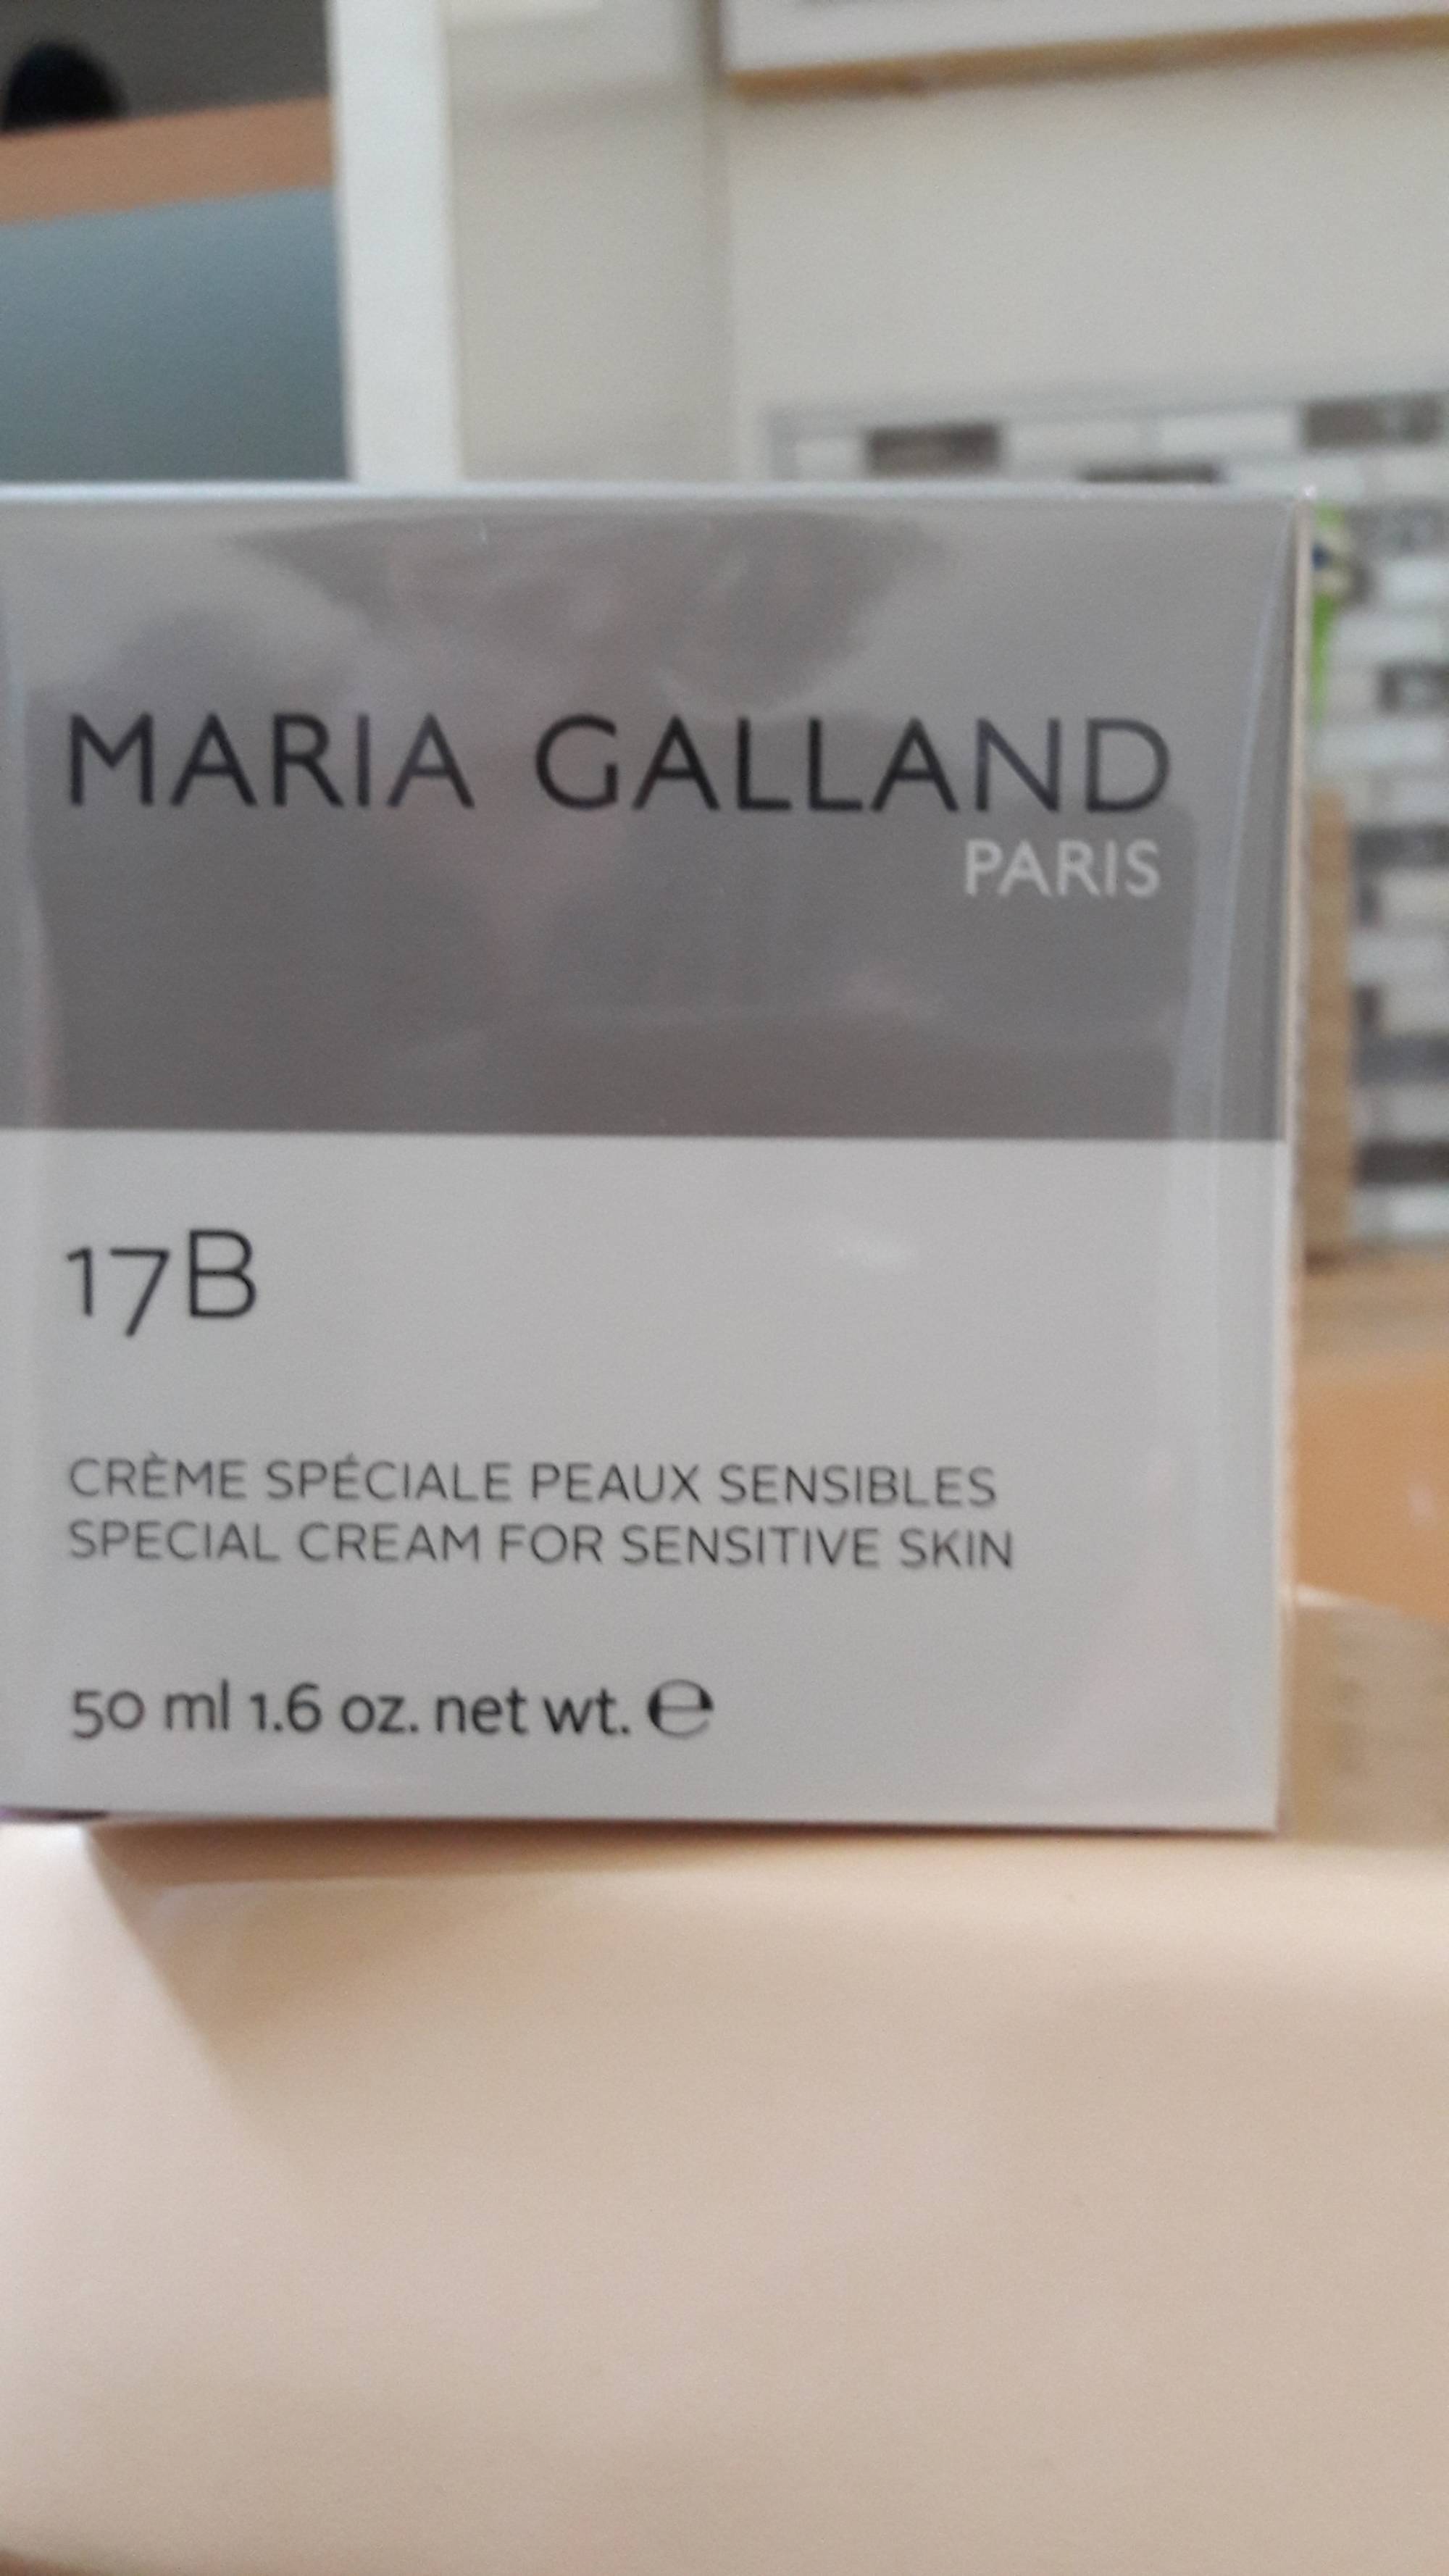 MARIA GALLAND - Crème spéciale peaux sensibles 17B